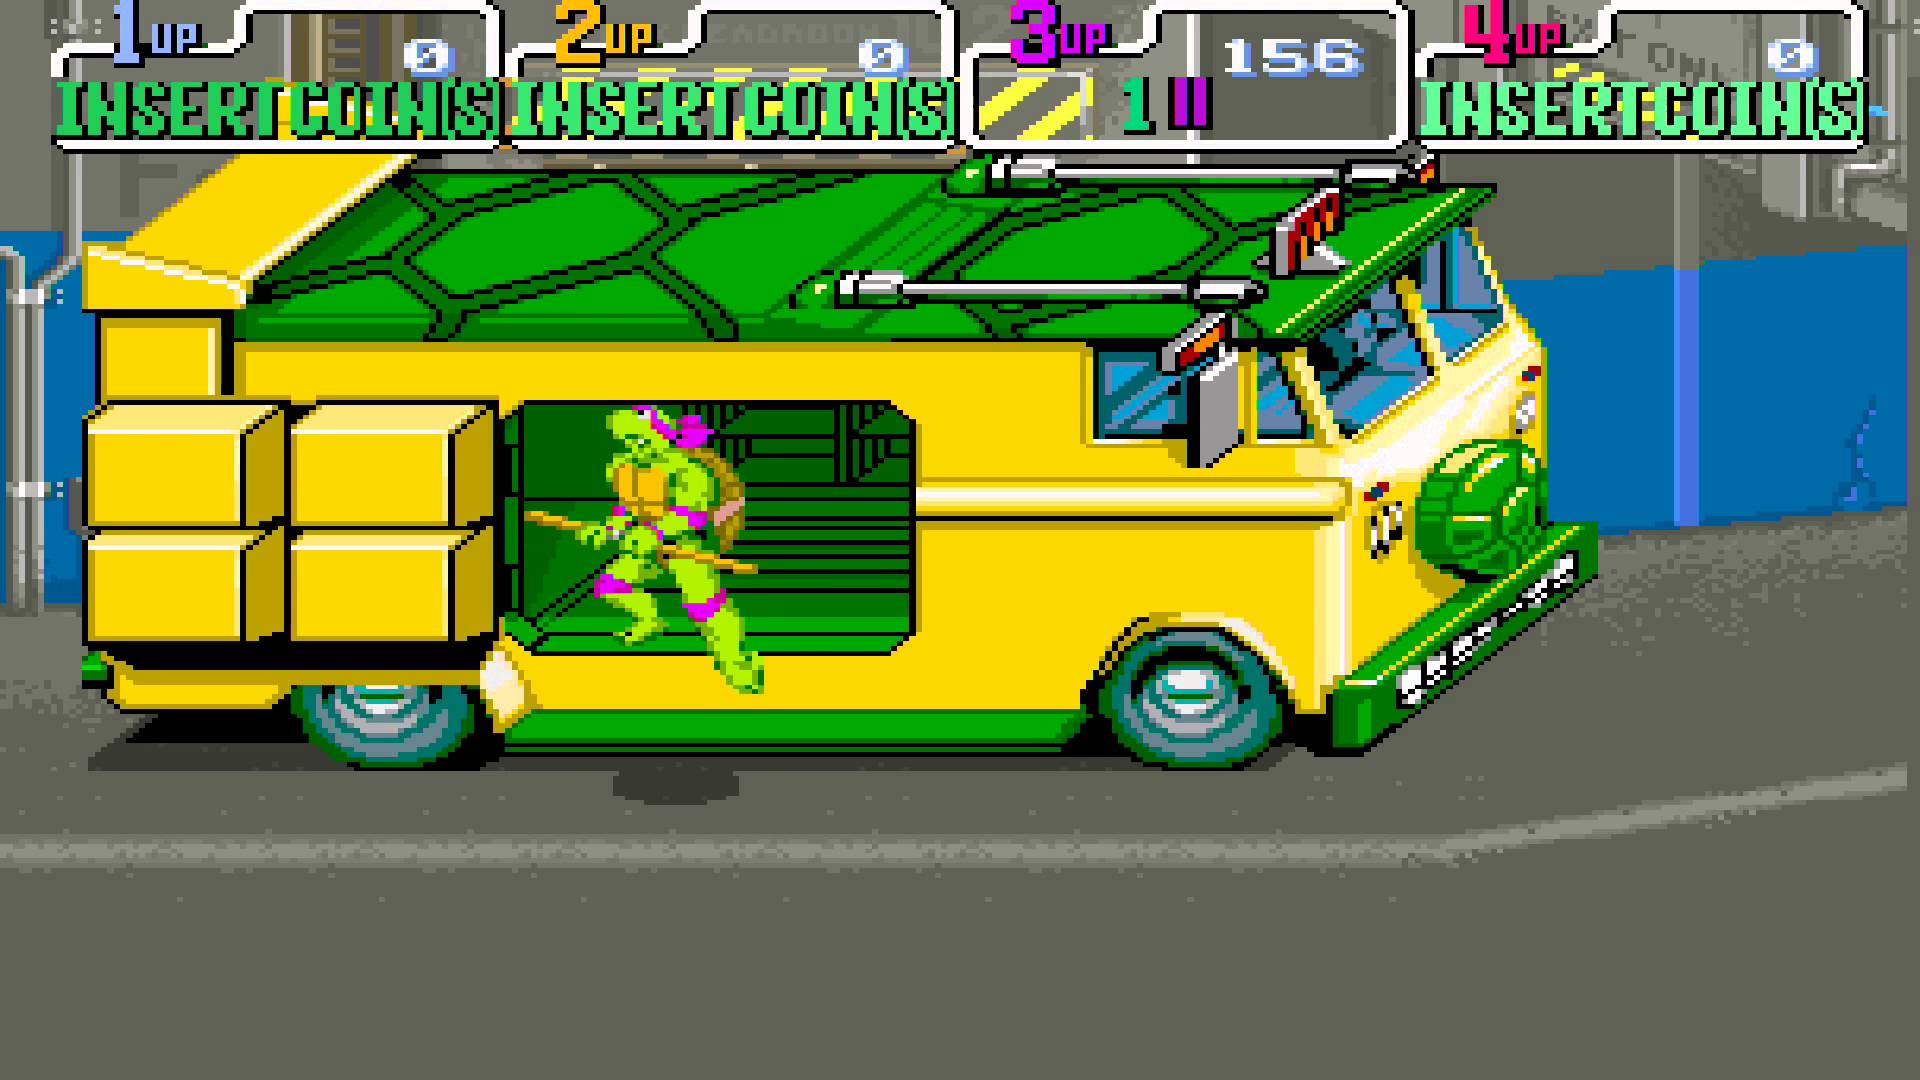 Teenage Mutant Ninja Turtle TMNT Arcade Old School Game